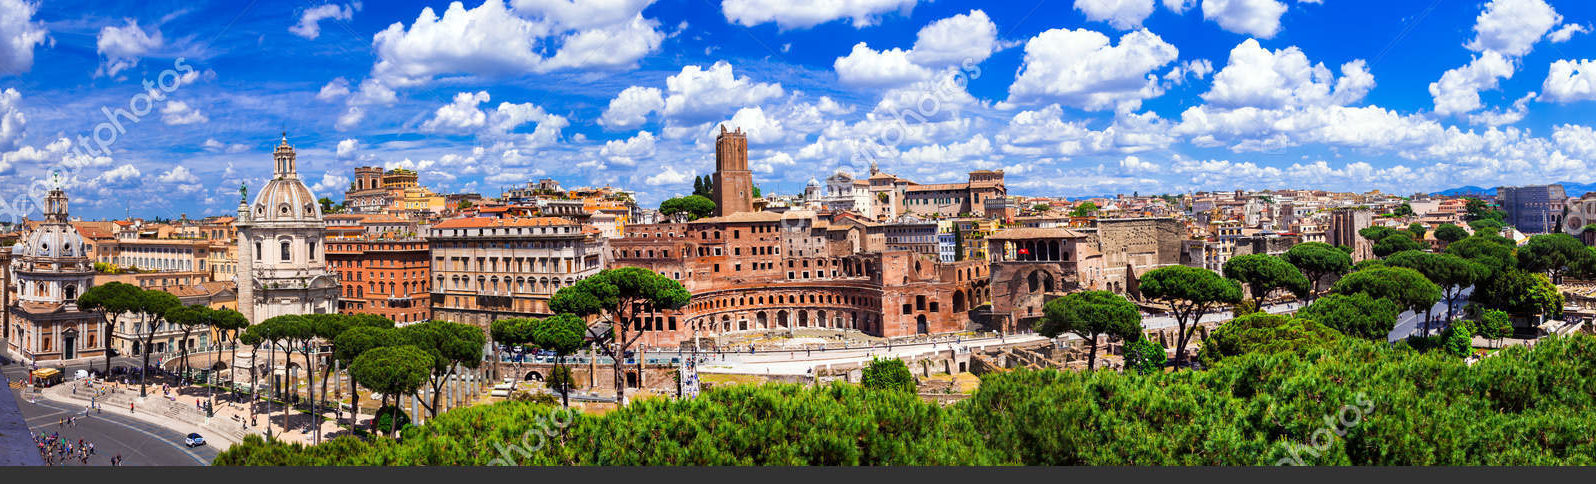 Рим. Панорамный вид